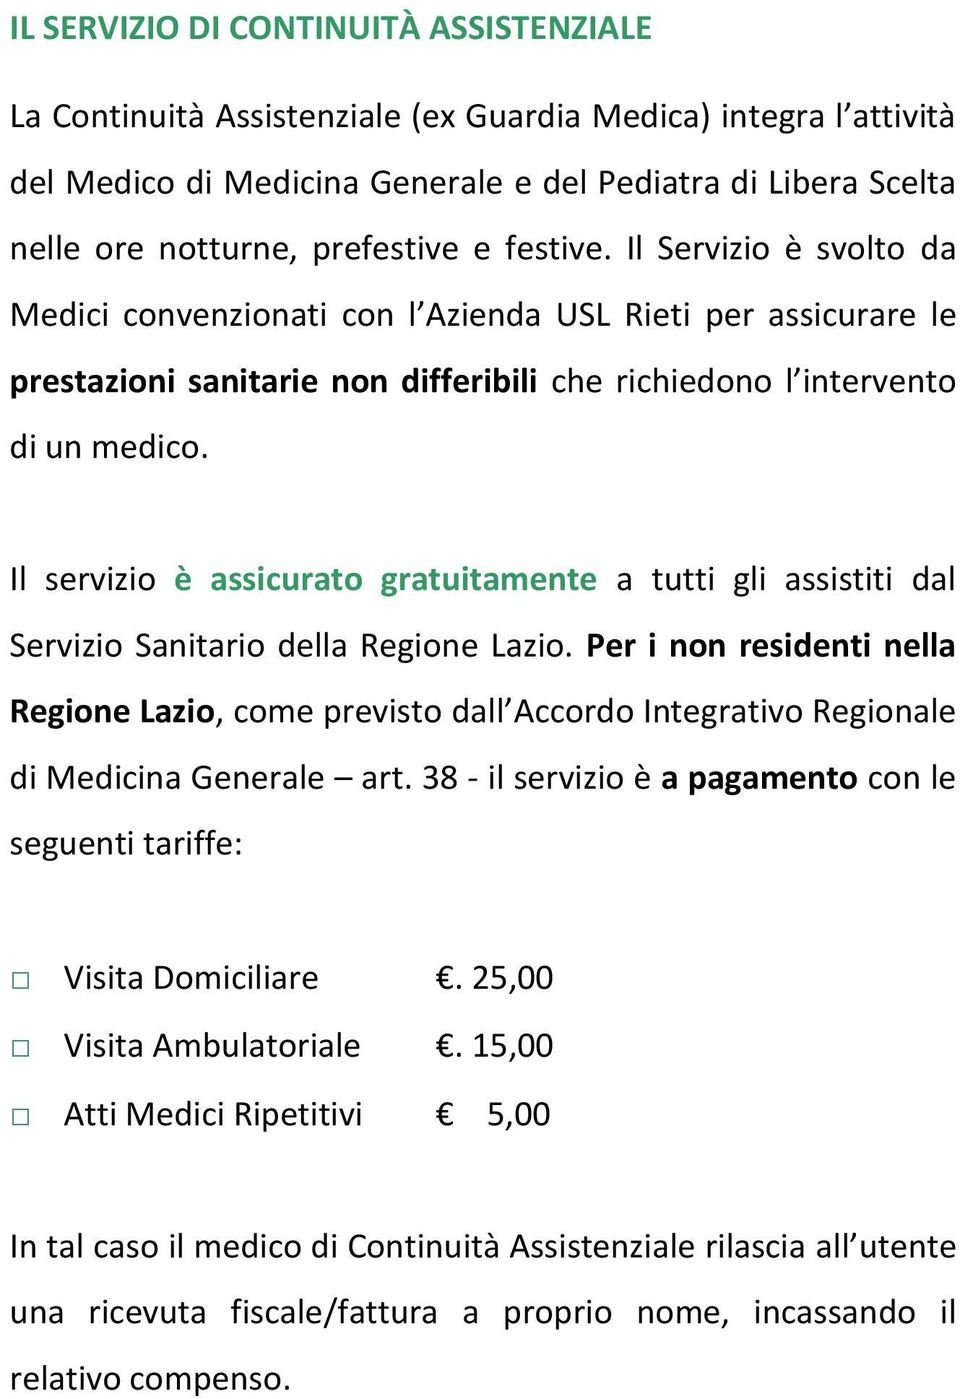 Il servizio è assicurato gratuitamente a tutti gli assistiti dal Servizio Sanitario della Regione Lazio.